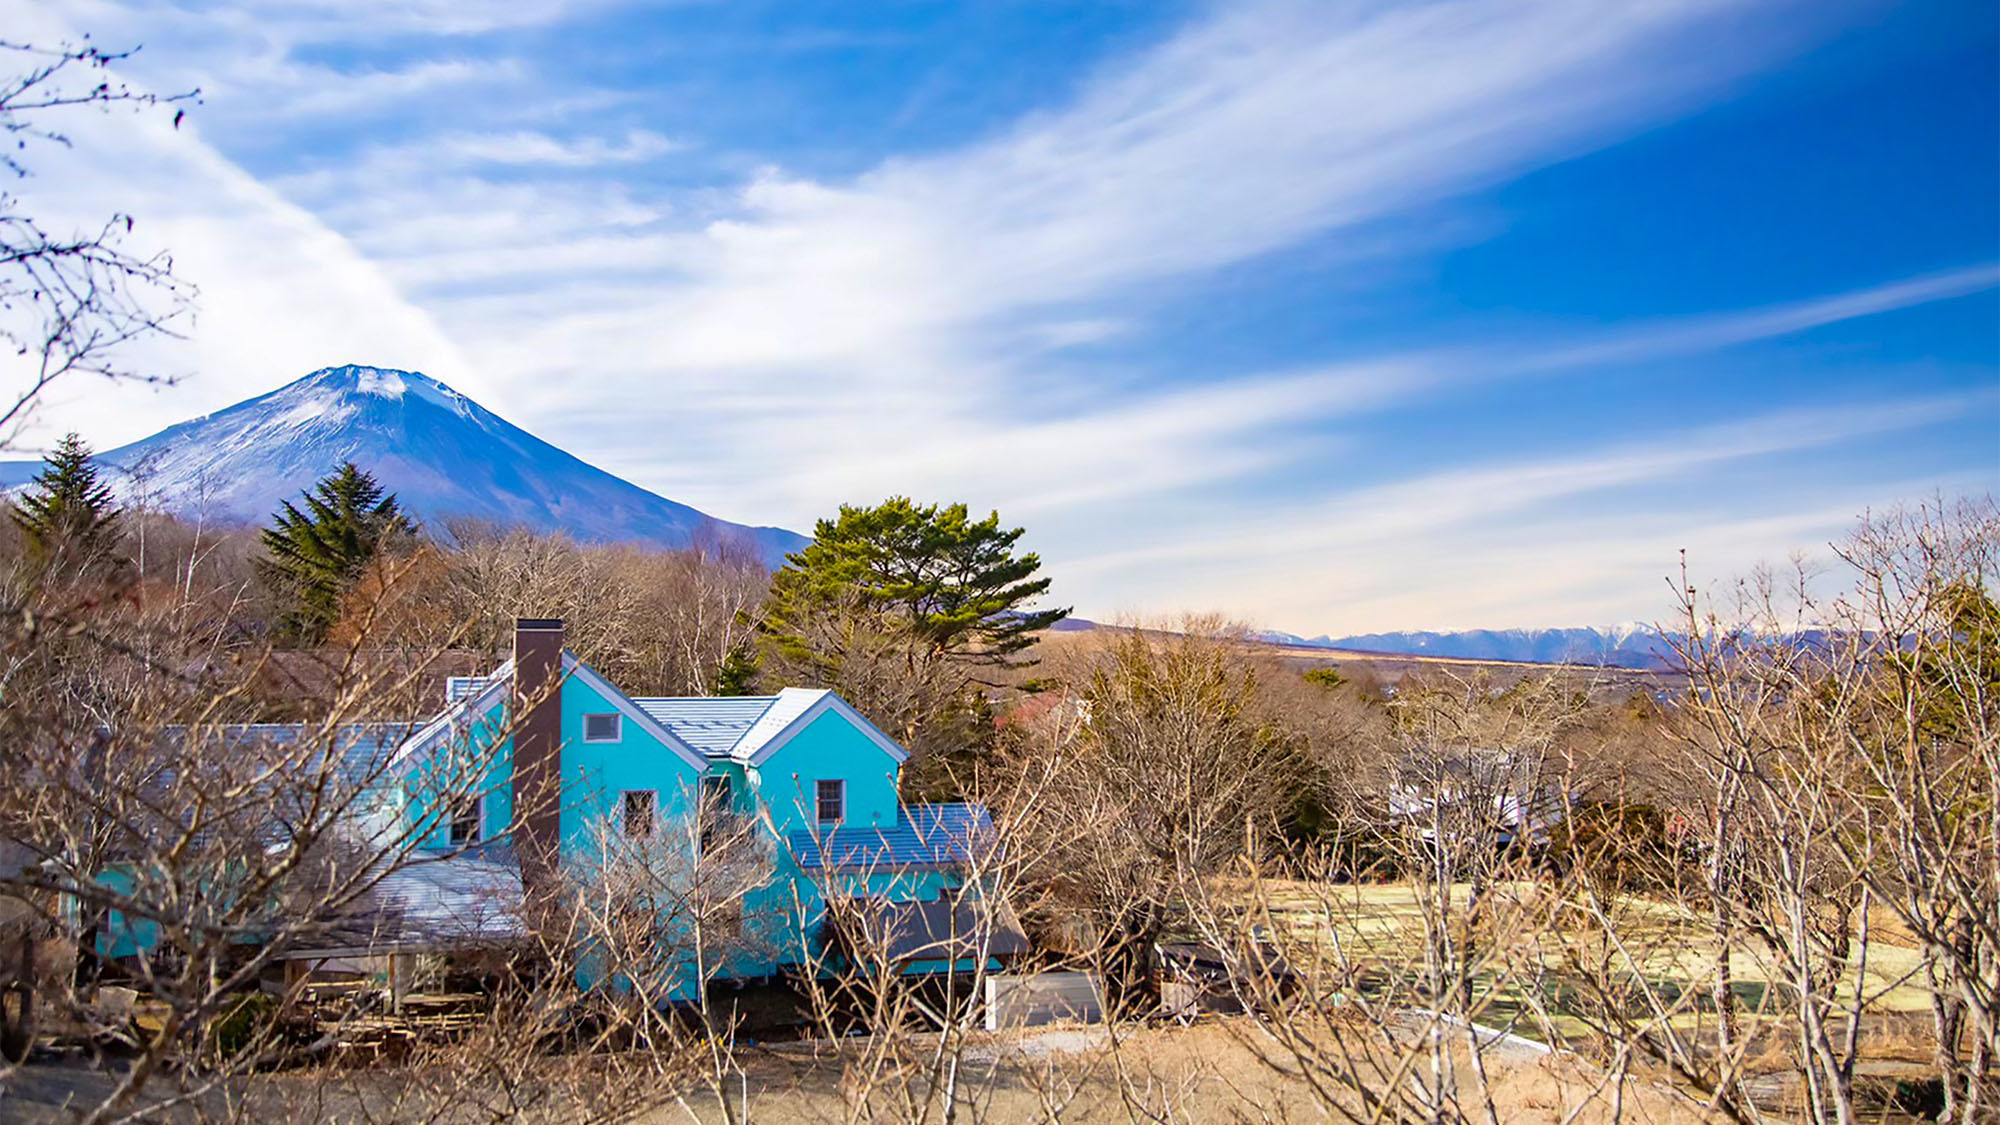 ・外観すぐ目の前に富士山が見える大自然の中にございます